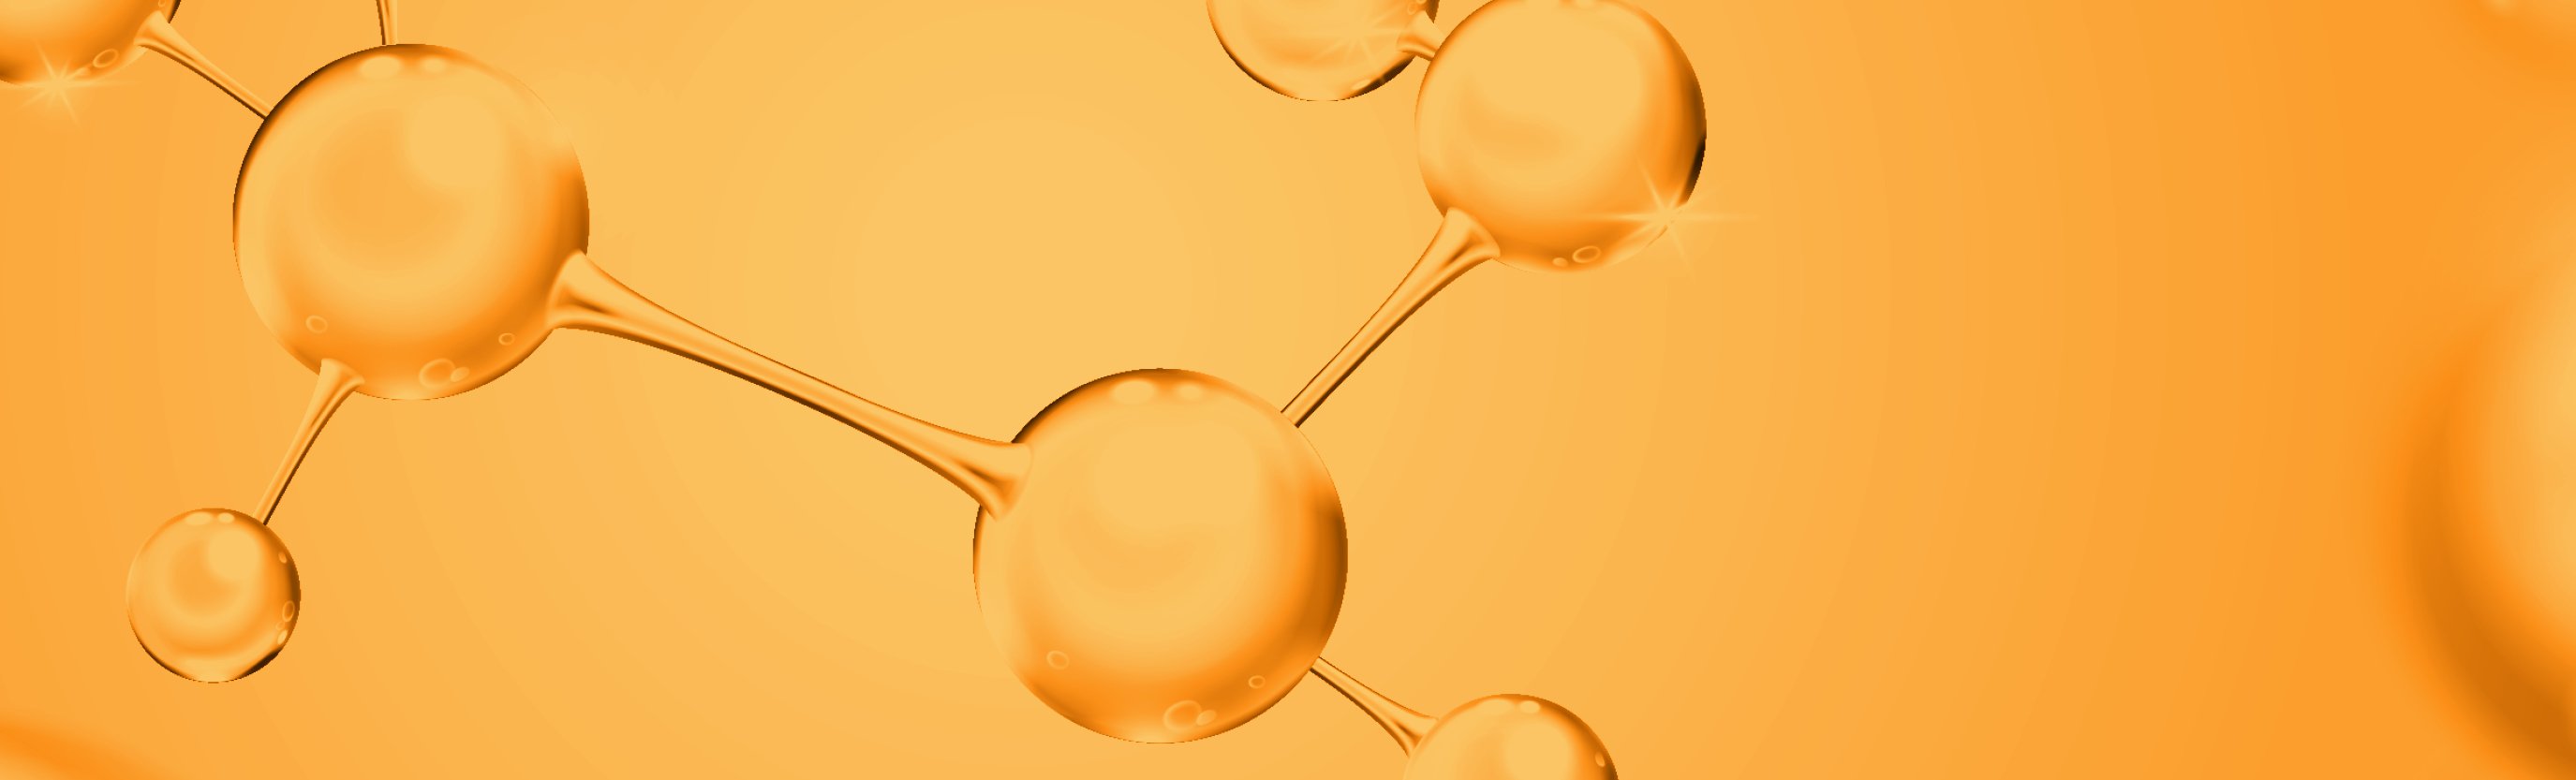 Peptide Molekül auf gelbem Hintergrund